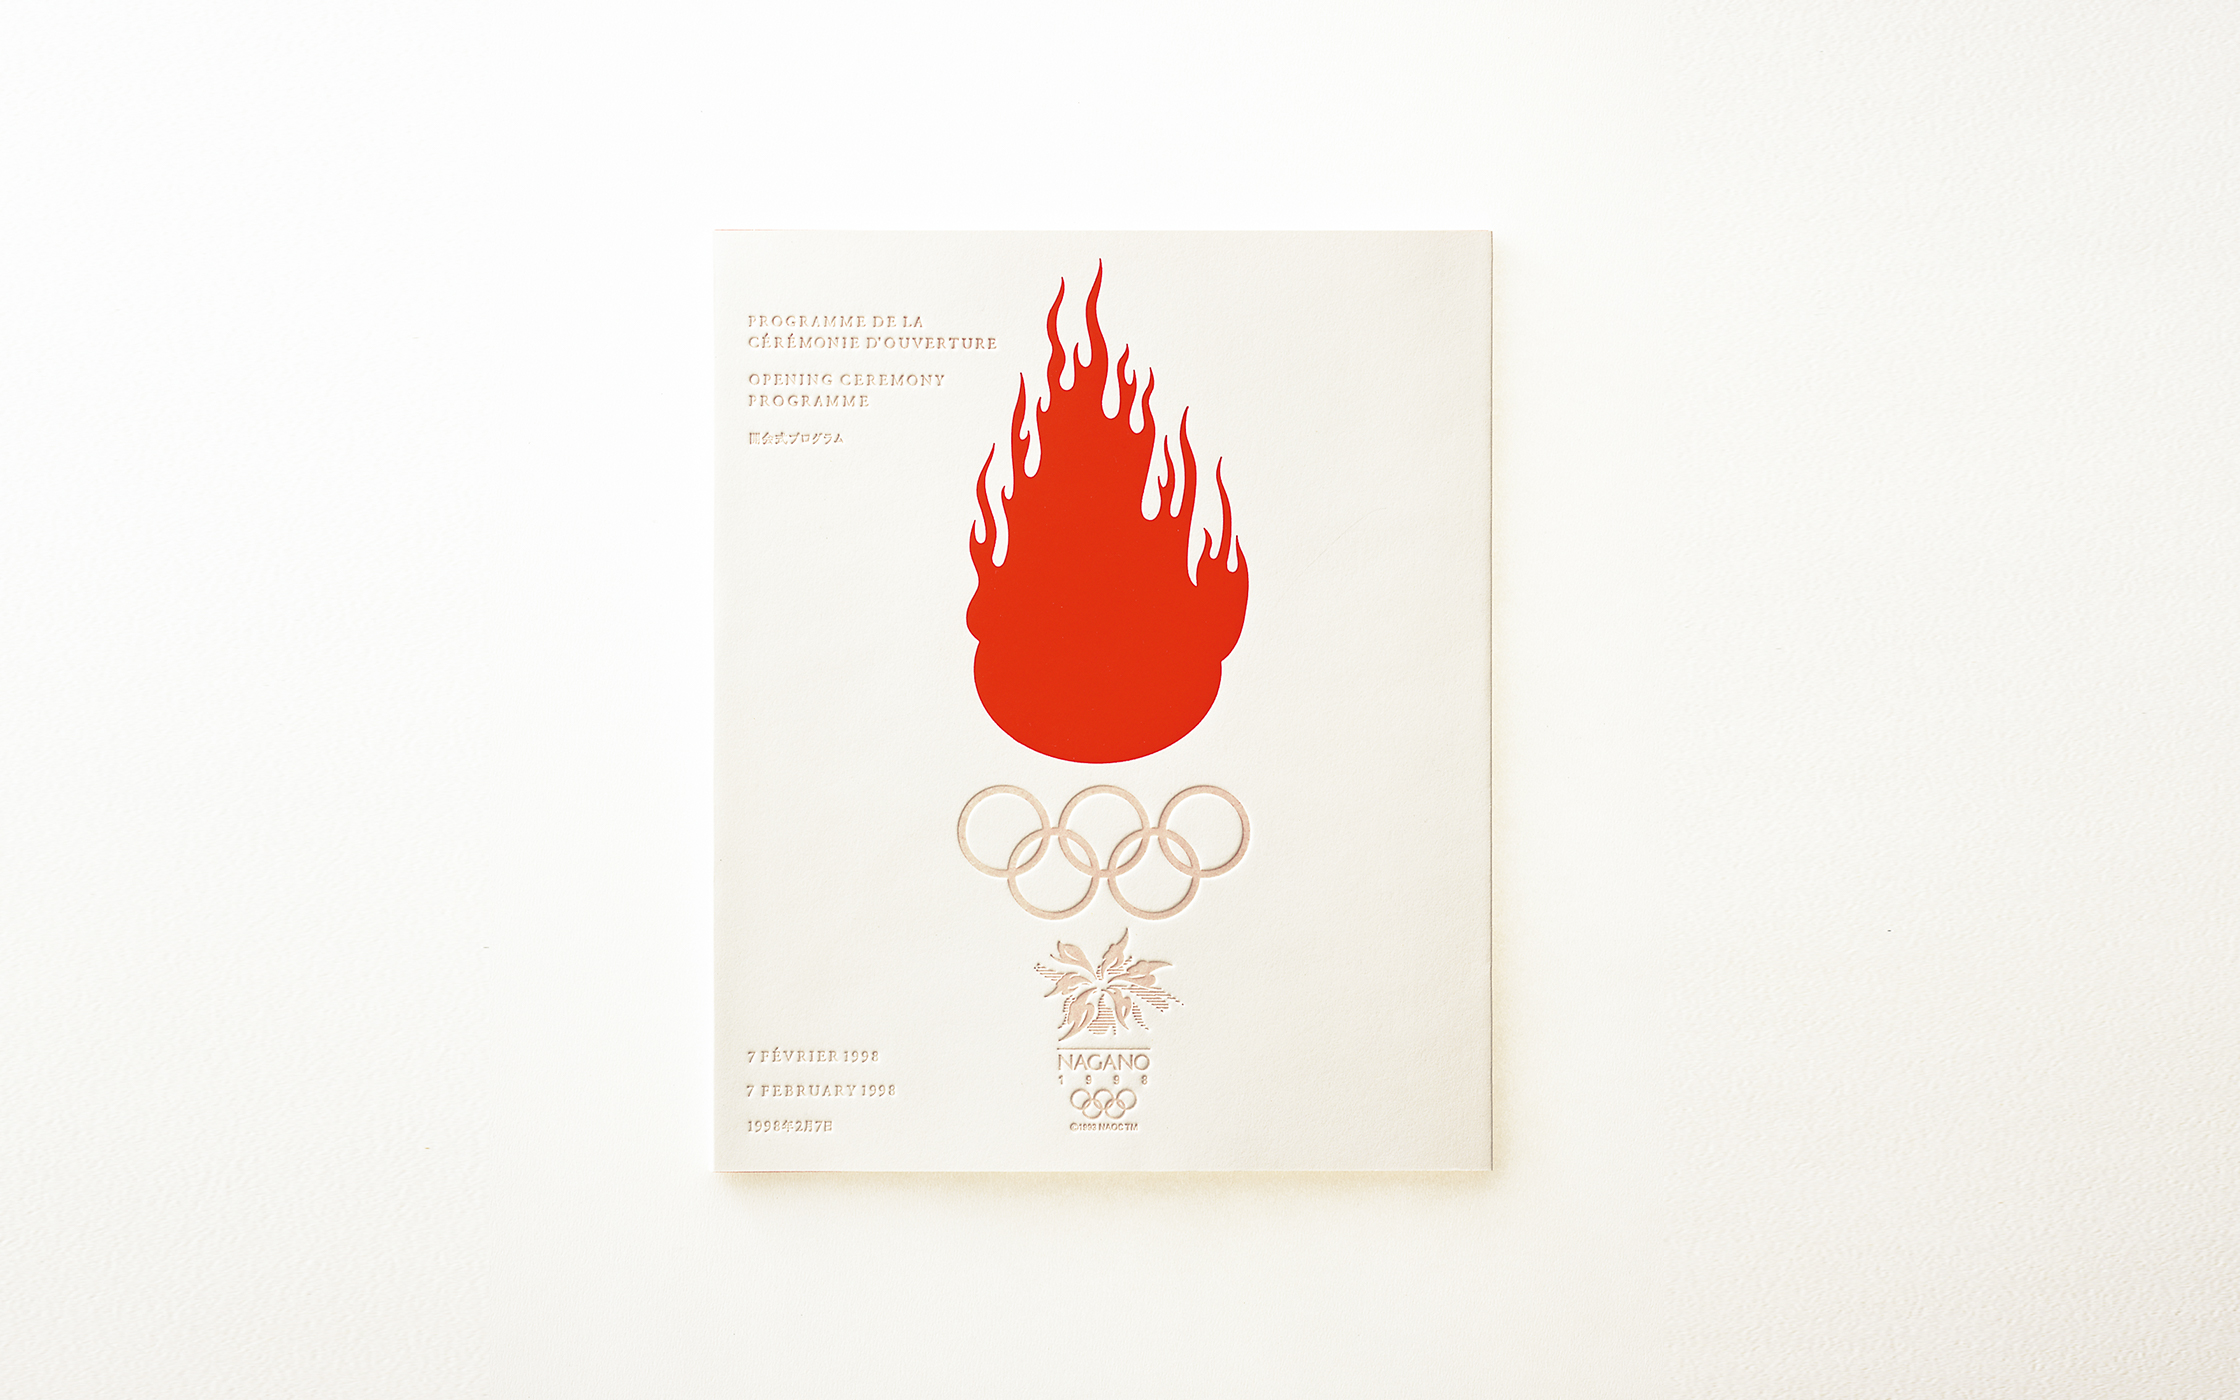 長野冬季オリンピック 開・閉会式プログラムデザイン | 日本デザイン 